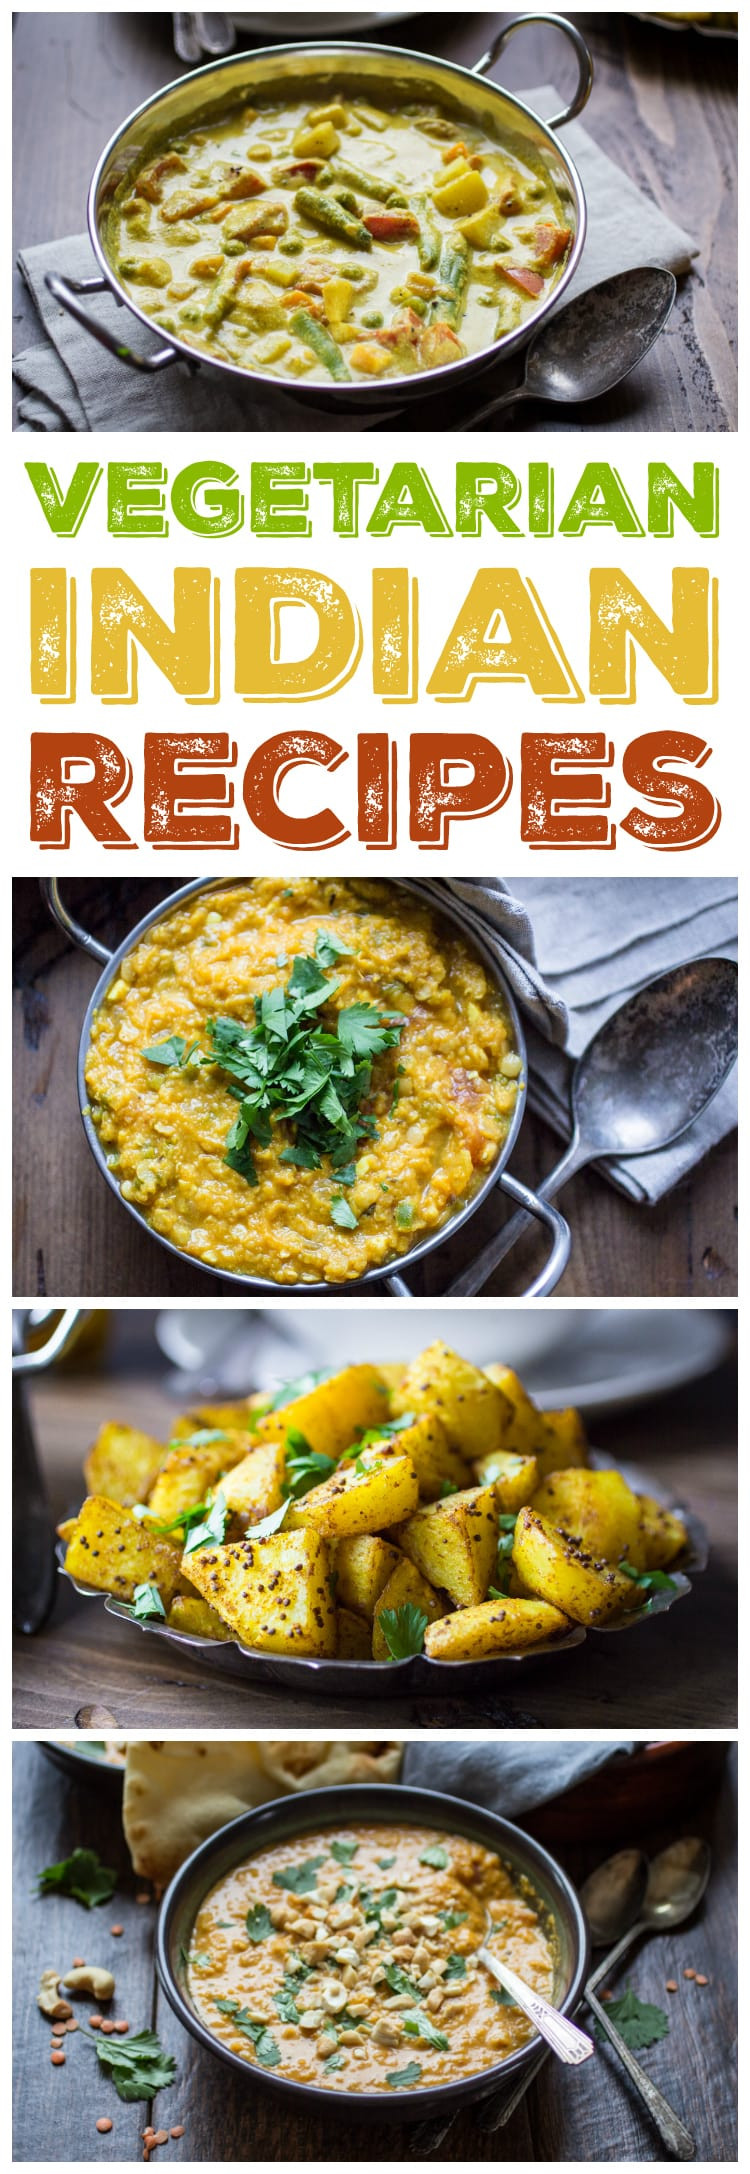 Indian Vegetarian Recipes for Dinner Elegant 10 Ve Arian Indian Recipes to Make Again and Again the